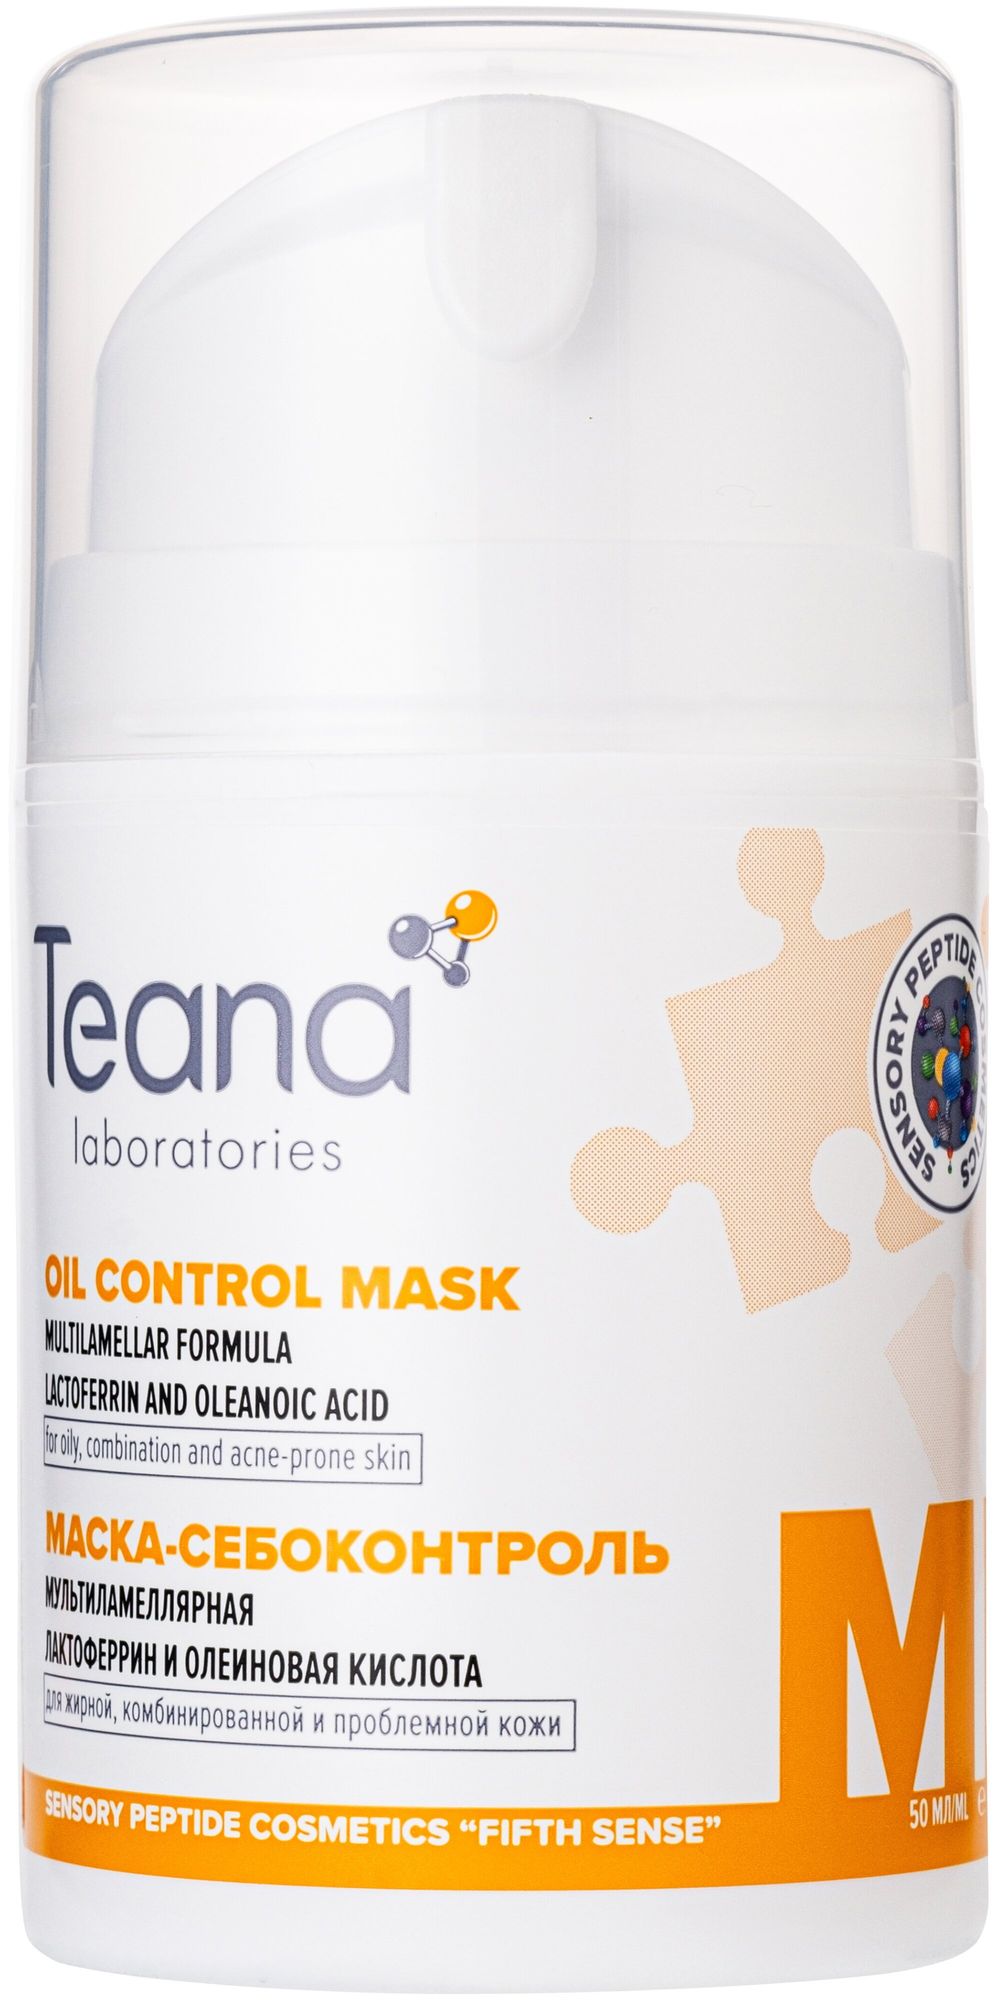 Мультиламеллярная маска- себоконтроль Teana с лактоферрином - диспенсер 50мл